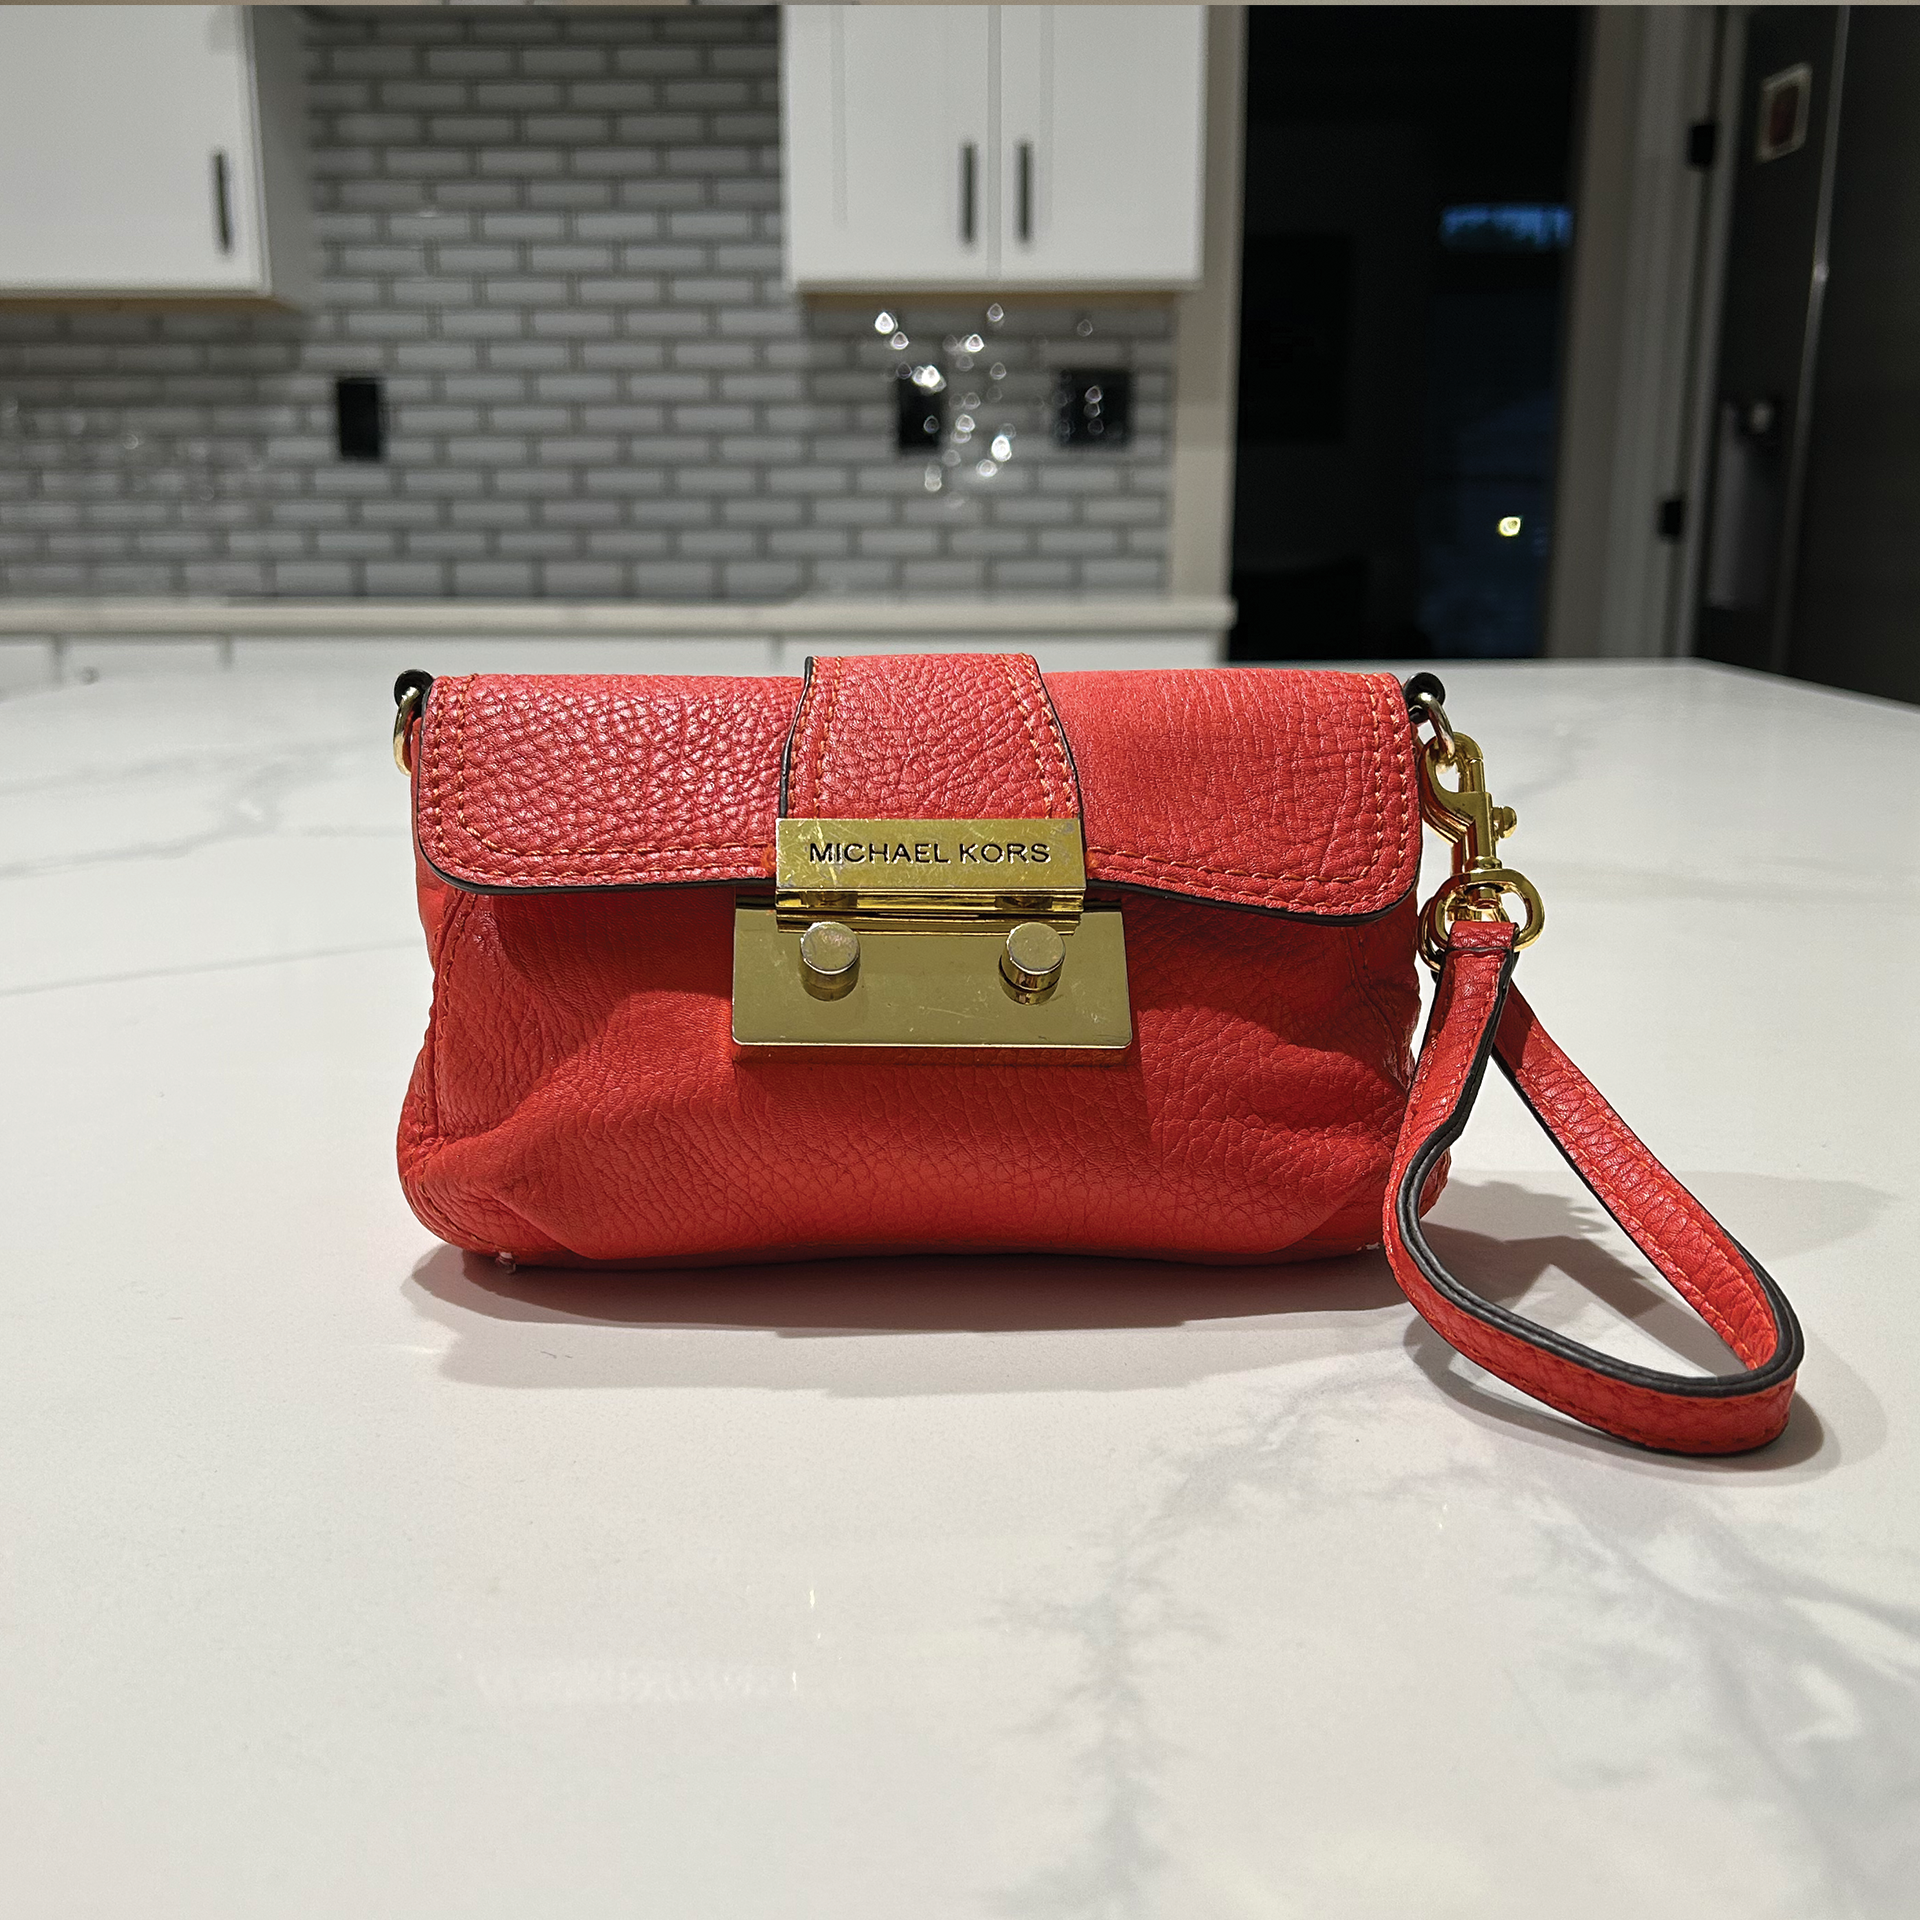 MK Small Handbag